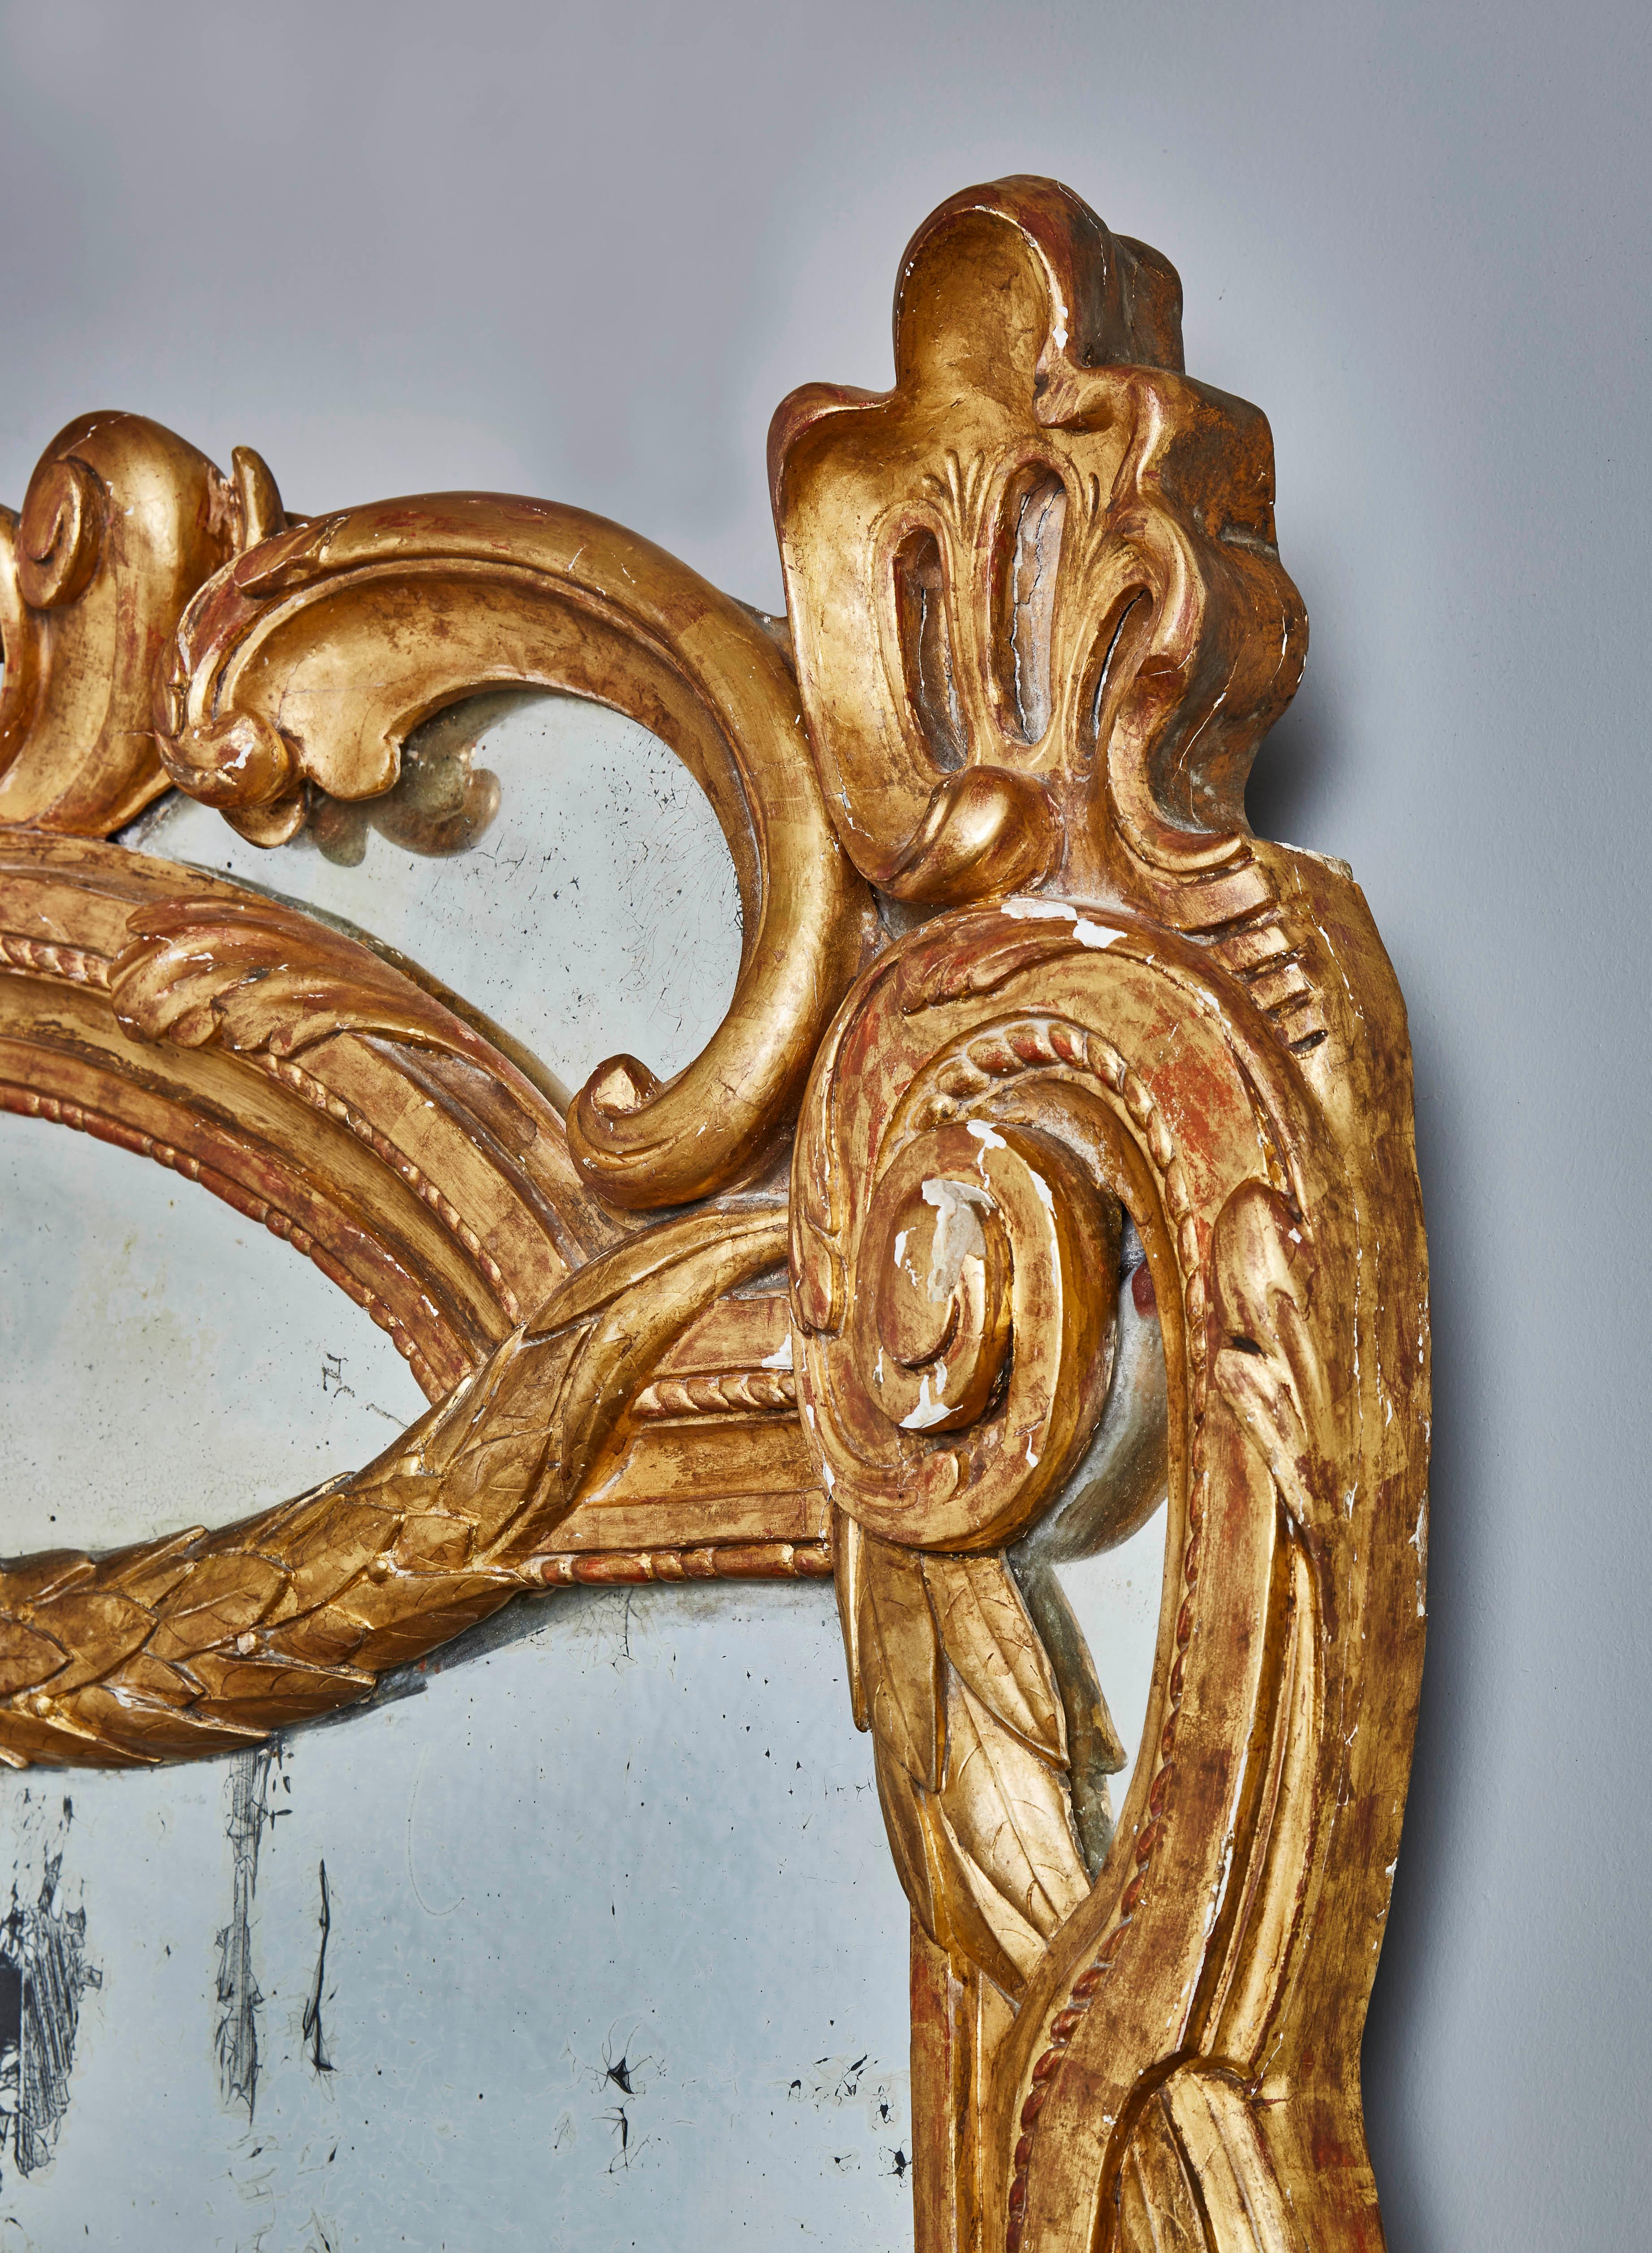 Exceptionnel miroir ancien au mercure avec un cadre en bois doré à la feuille d'or appartenant au style Louis XVI.
France, fin du XVIIIe siècle.